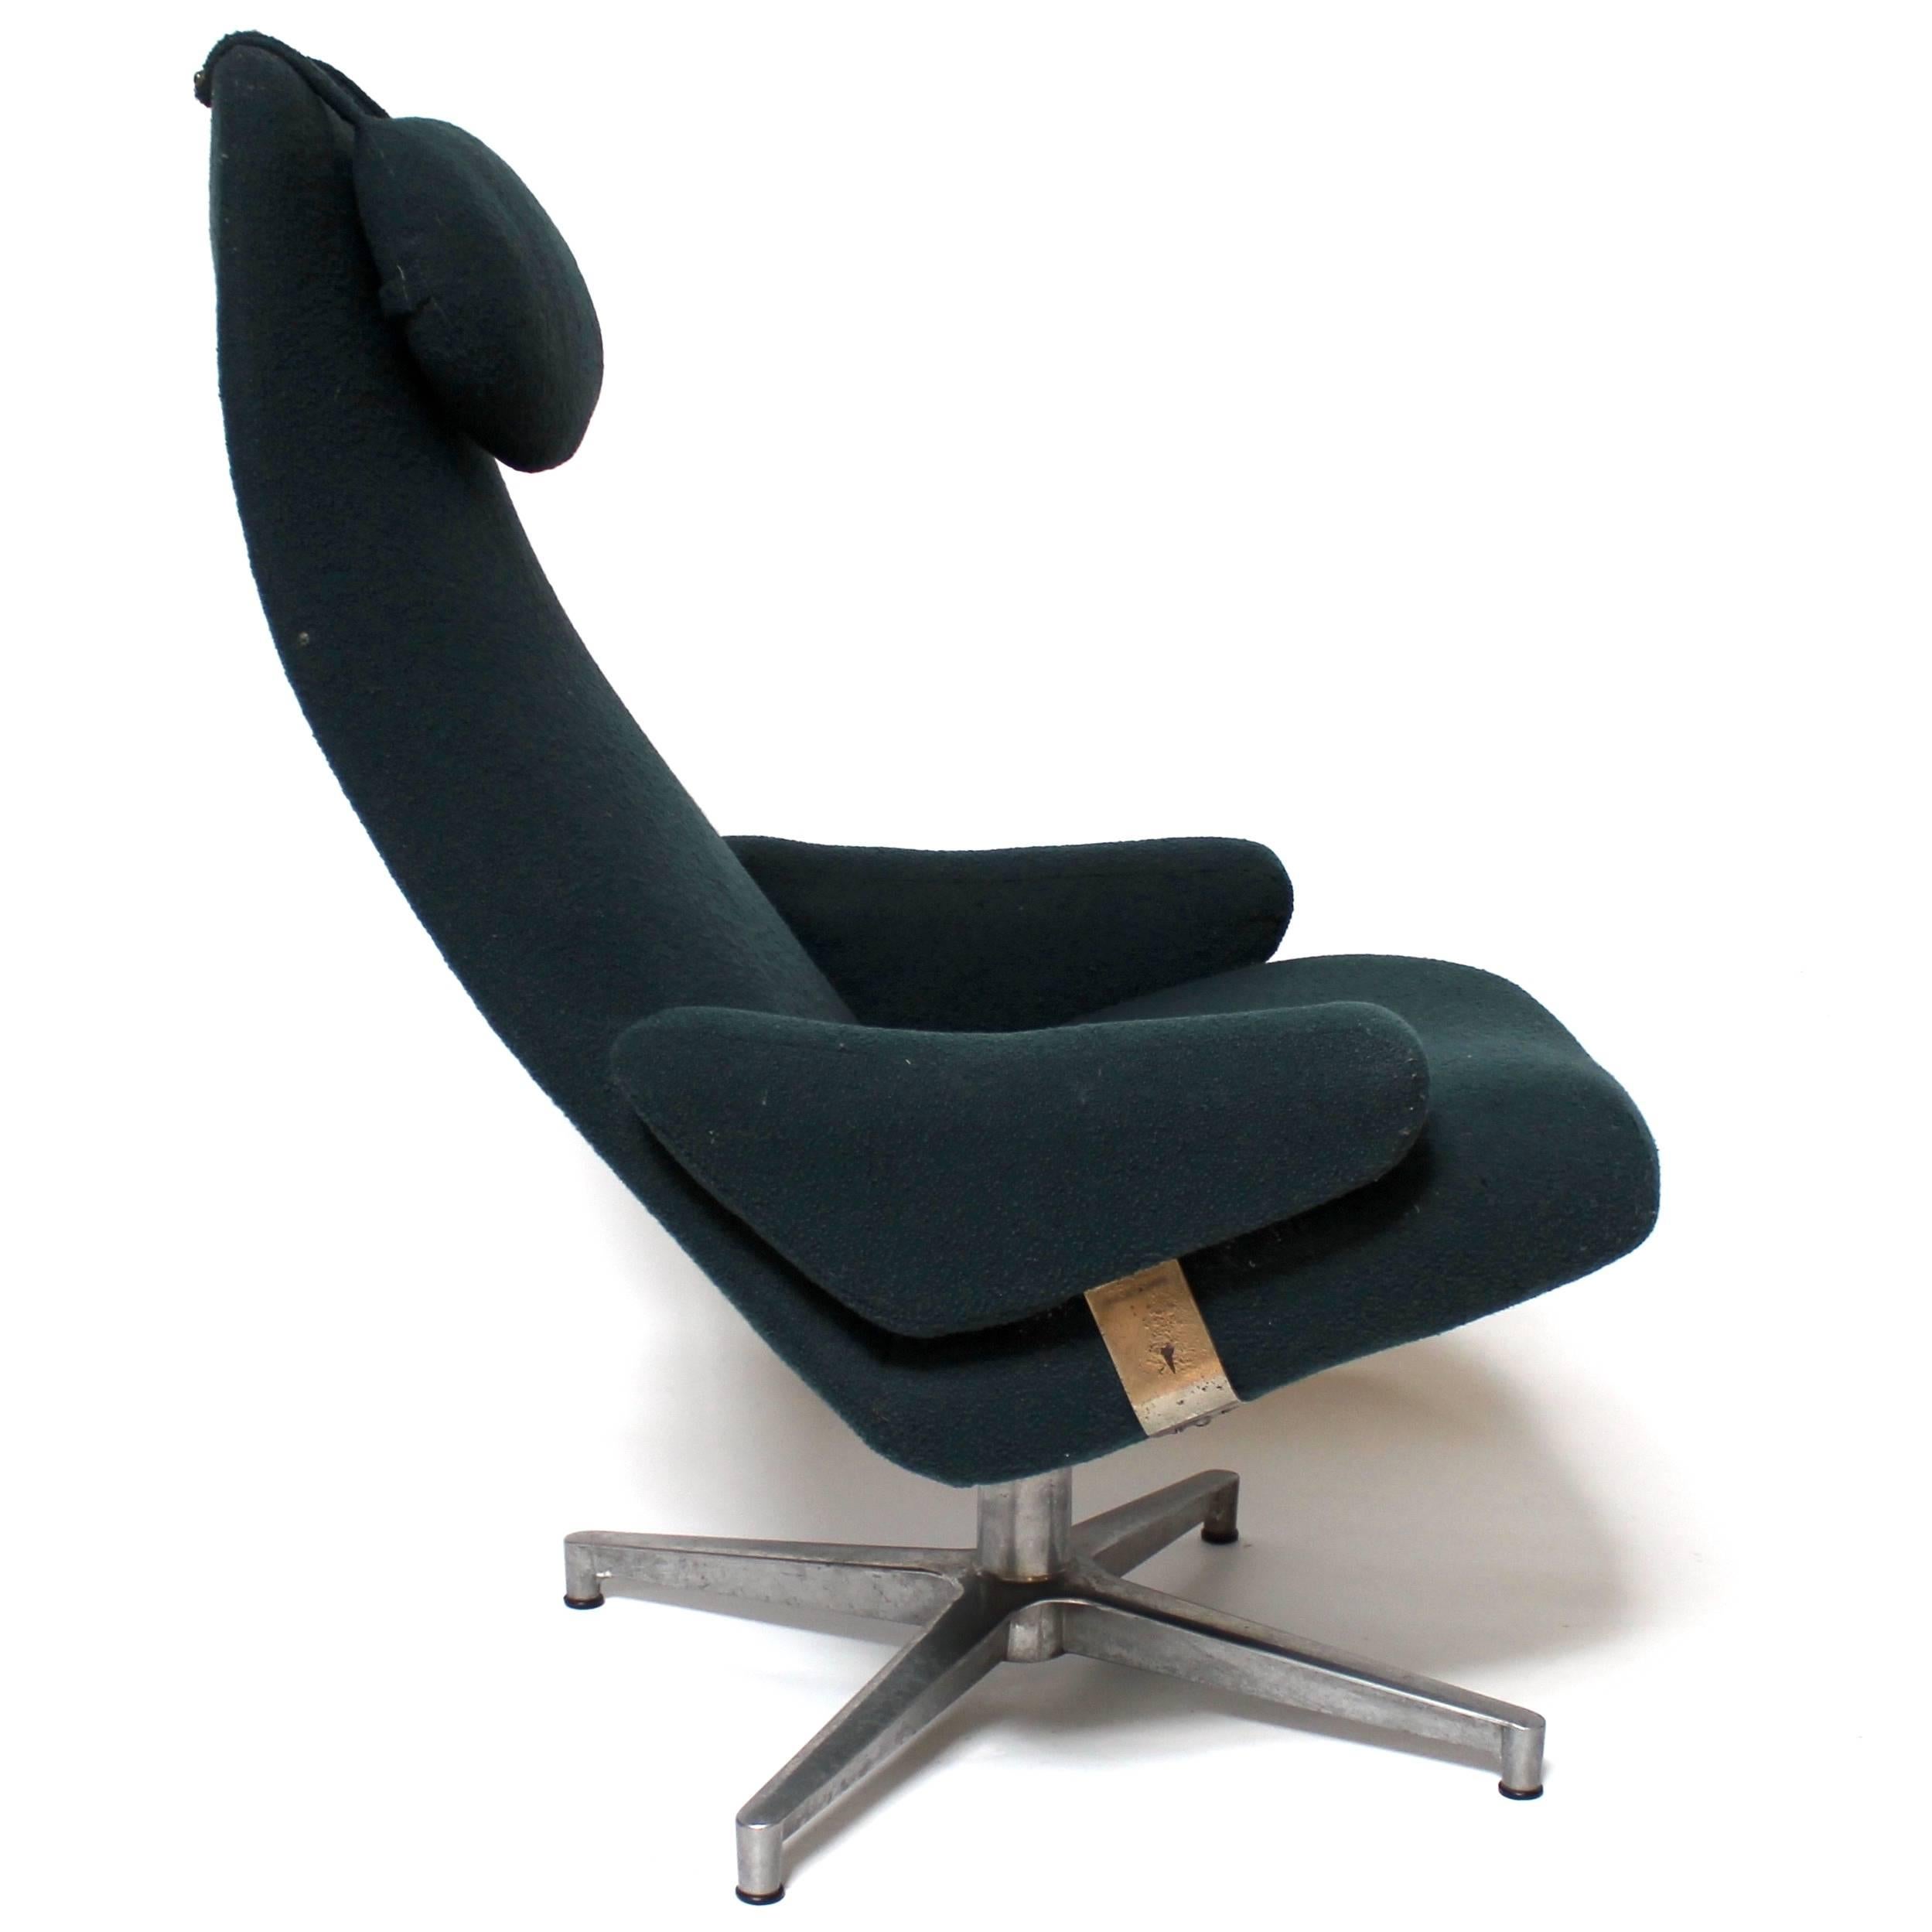 Swedish 1960s Contourette Lounge Chair by Alf Svensson for DUX